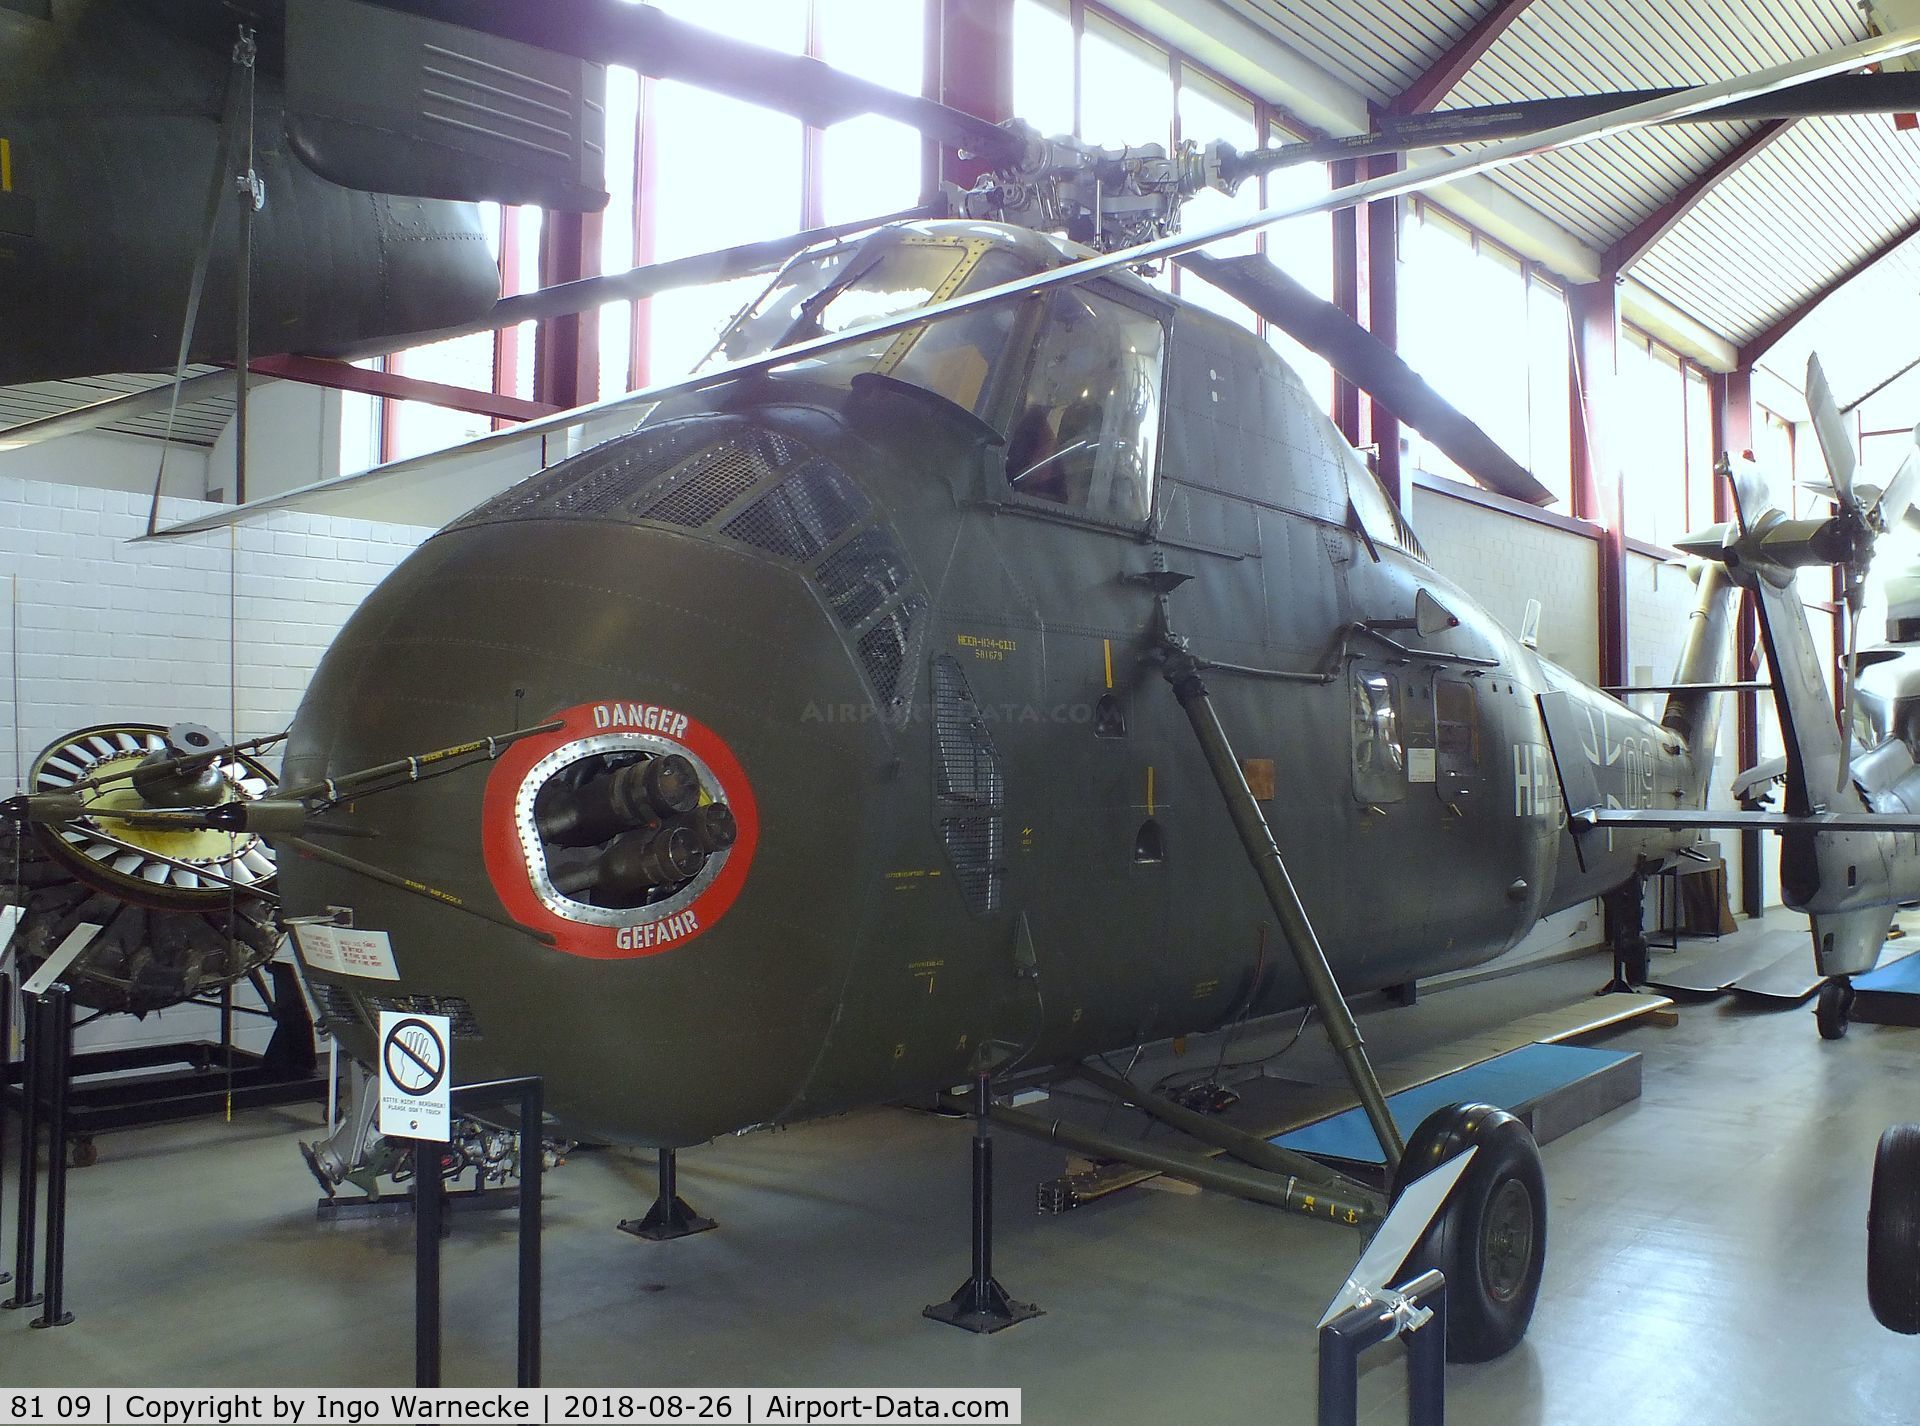 81 09, Sikorsky H-34G Choctaw C/N 58-1679, Sikorsky H-34G Choctaw at the Hubschraubermuseum (helicopter museum), Bückeburg